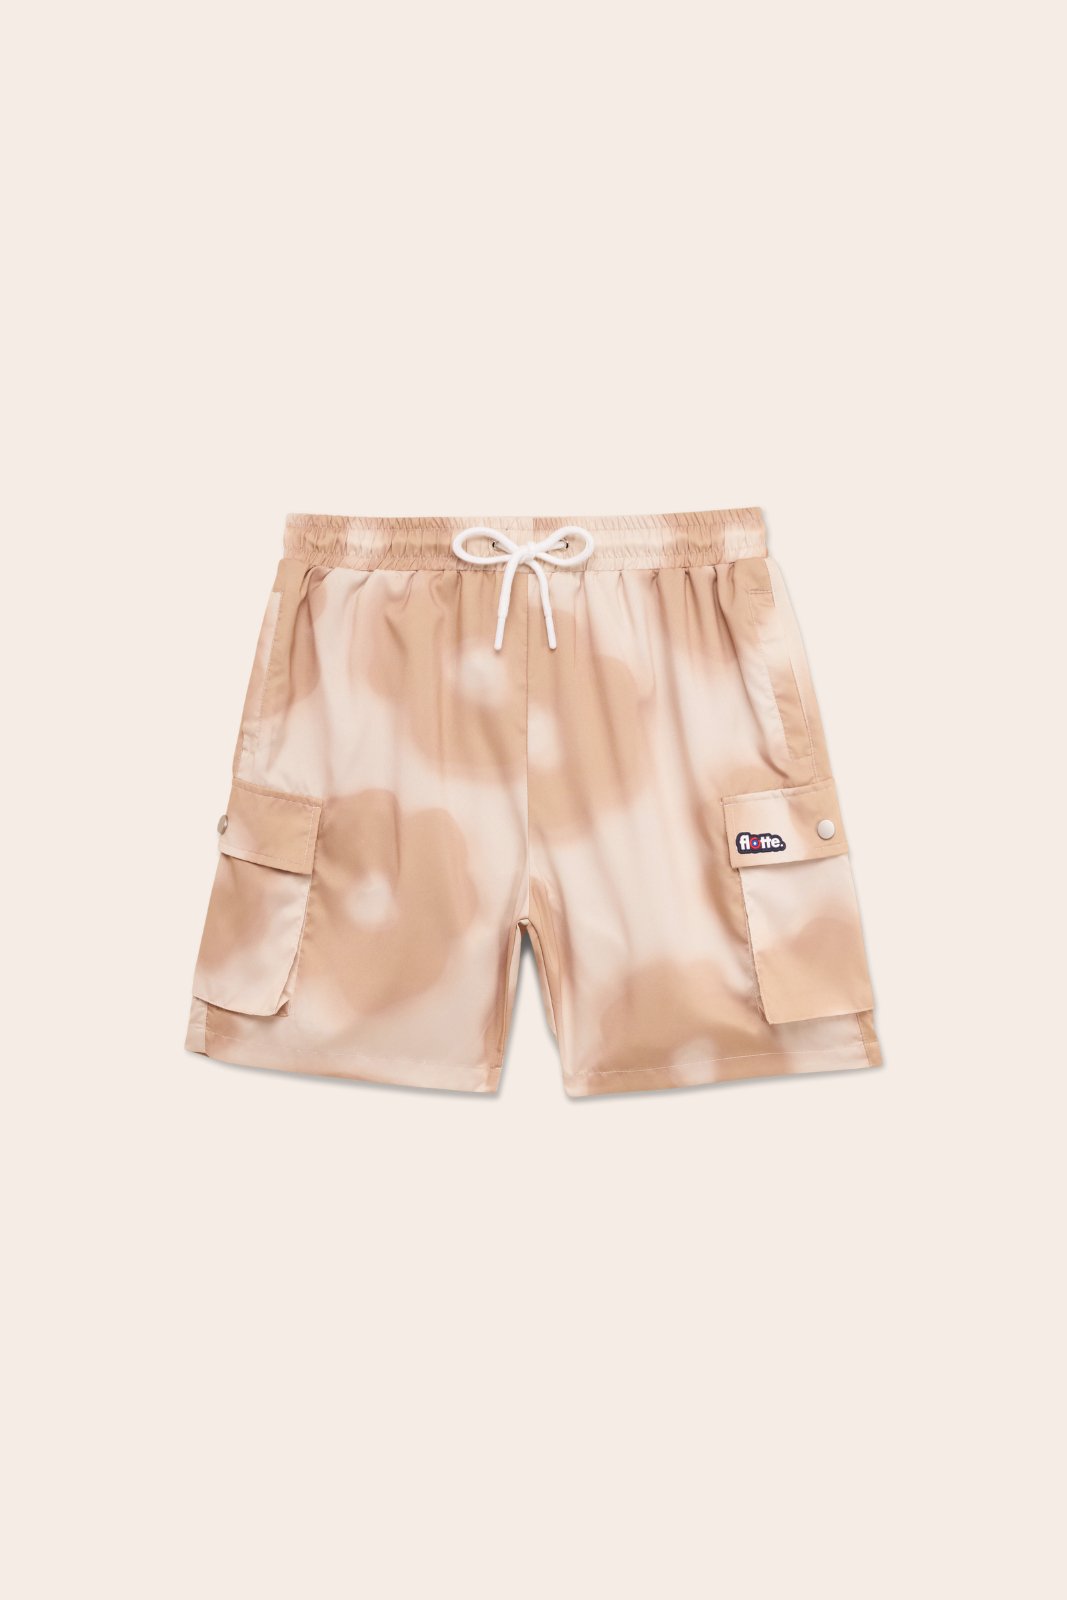 Saint-Louis - Swimsuit shorts - Flotte #couleur_daisy